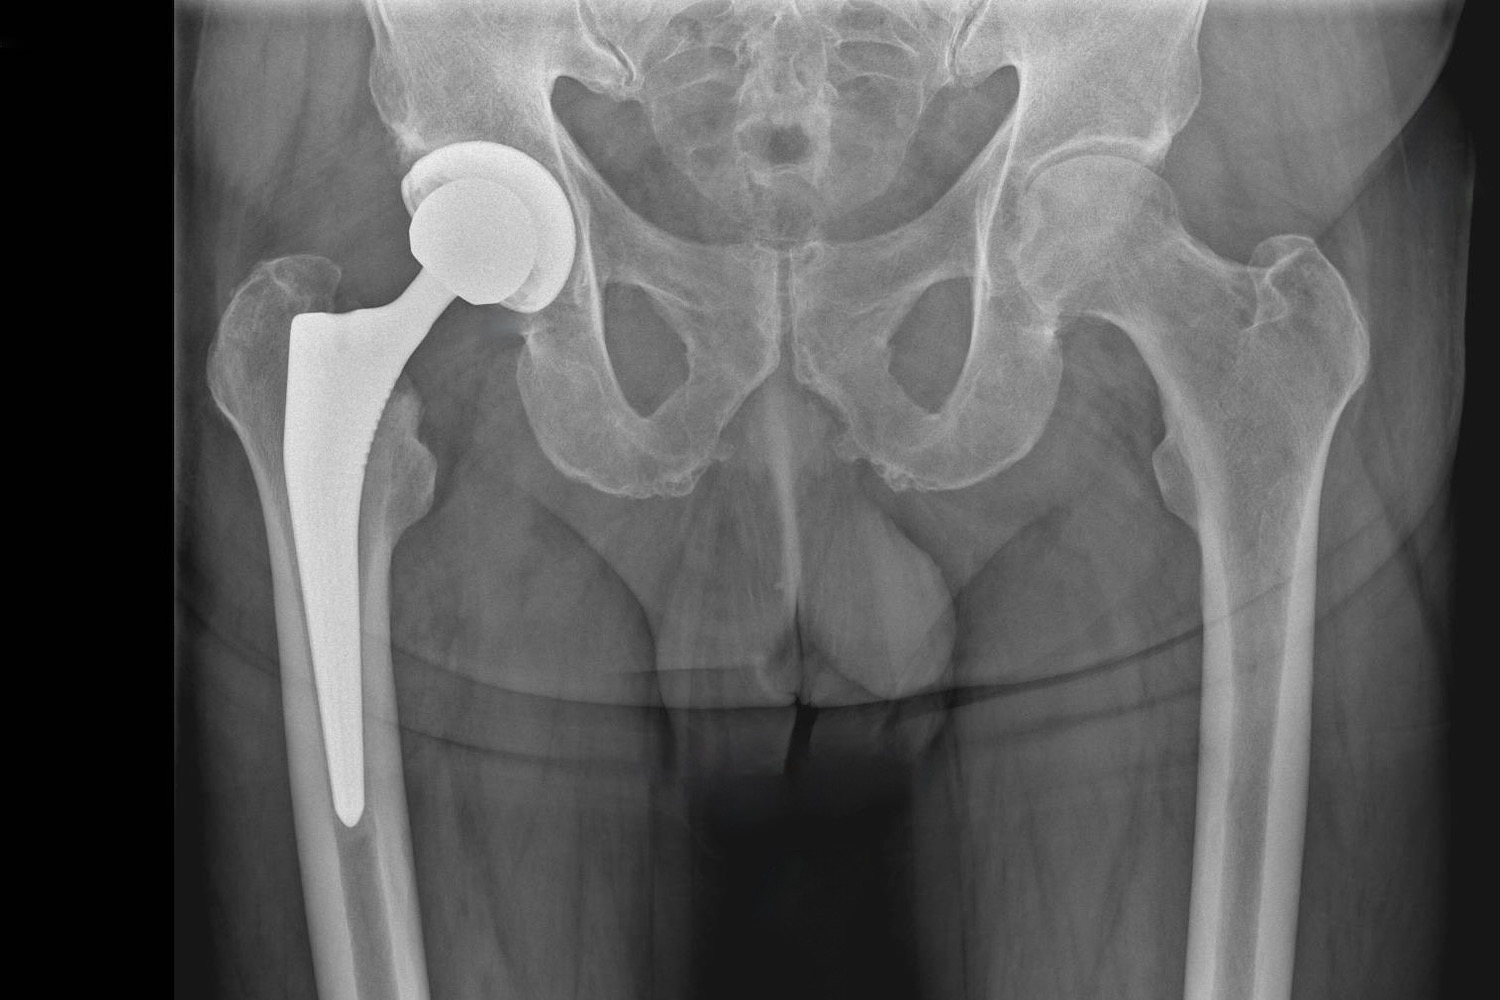 Beispiel eines Röntgenbildes einer optimal eingesetzten Hüftprothese rechts (Patientenseite).